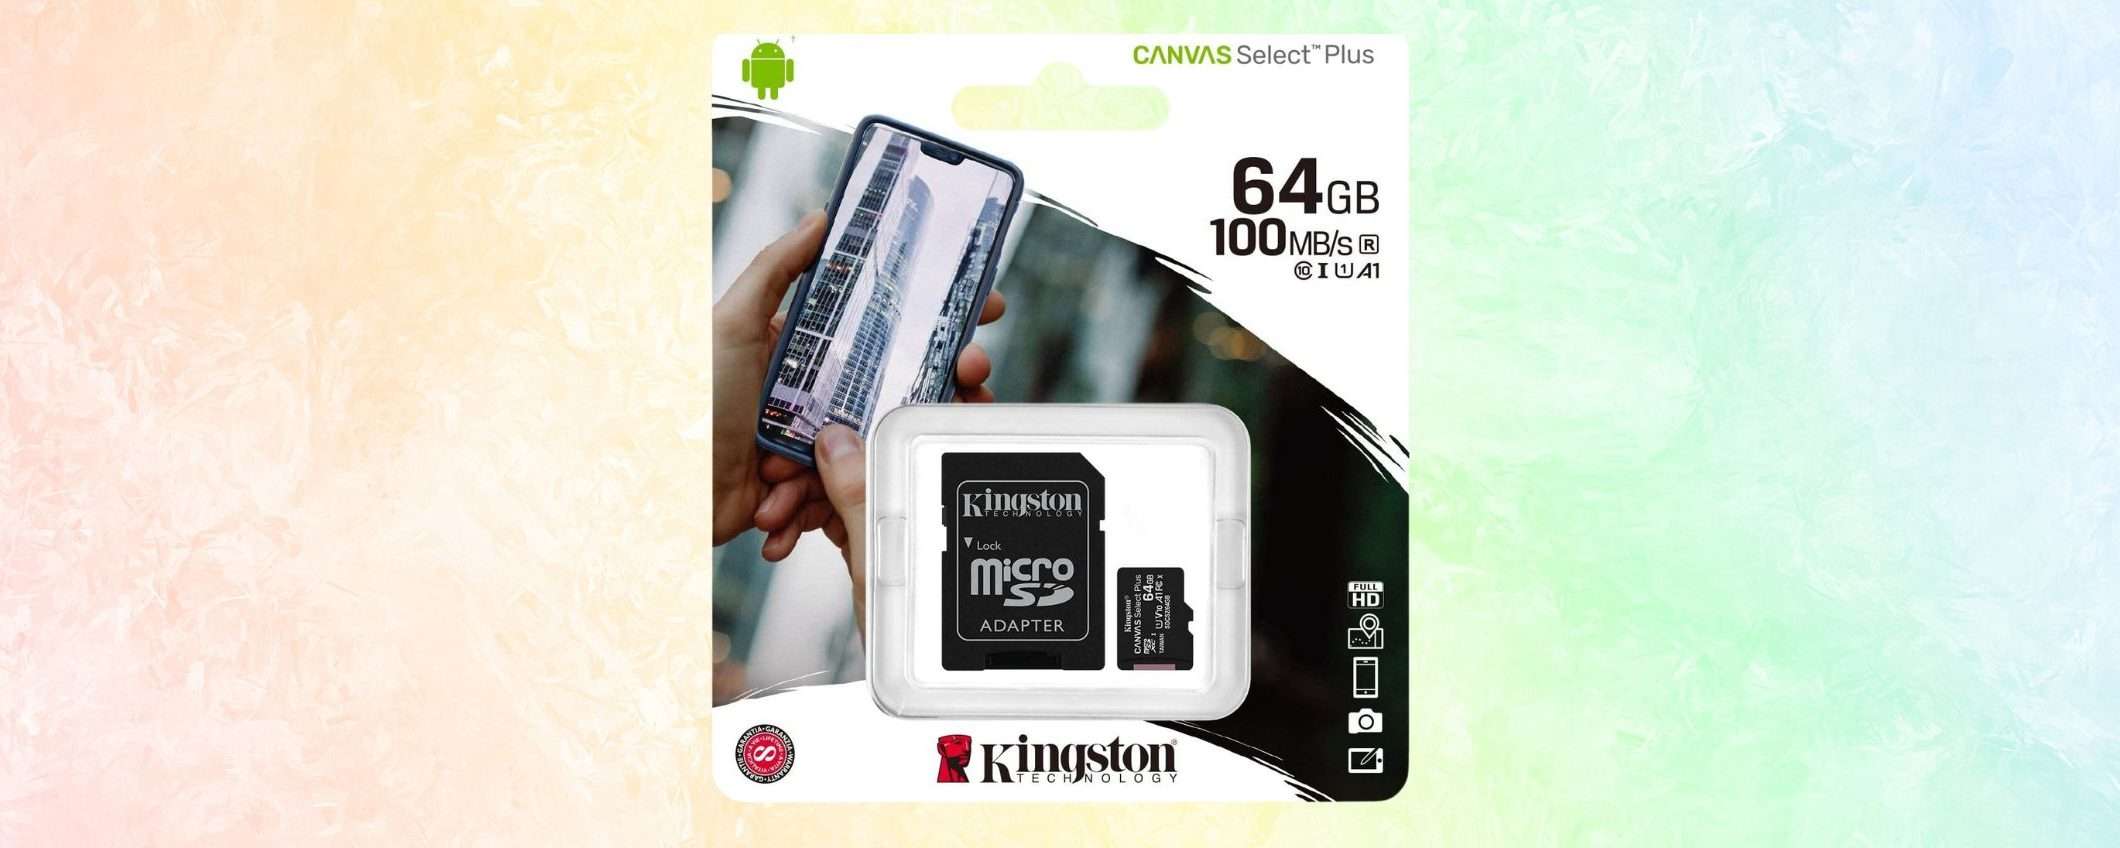 MicroSD Kingston 64GB Classe 10 in SUPER SCONTO: solo 5,99€